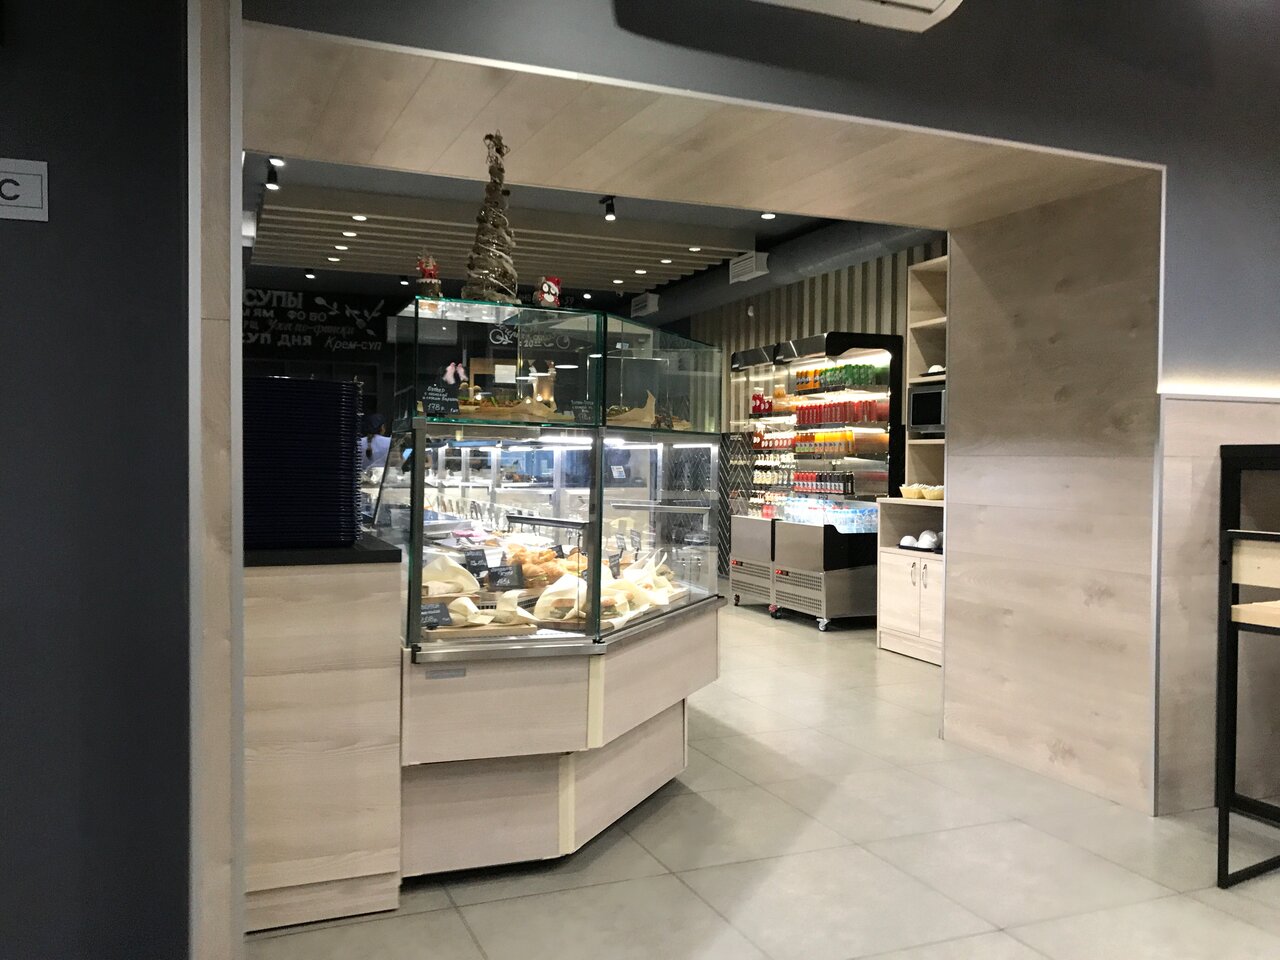 Столовая Кафе Кулинария рядом с ТЦ Галерея